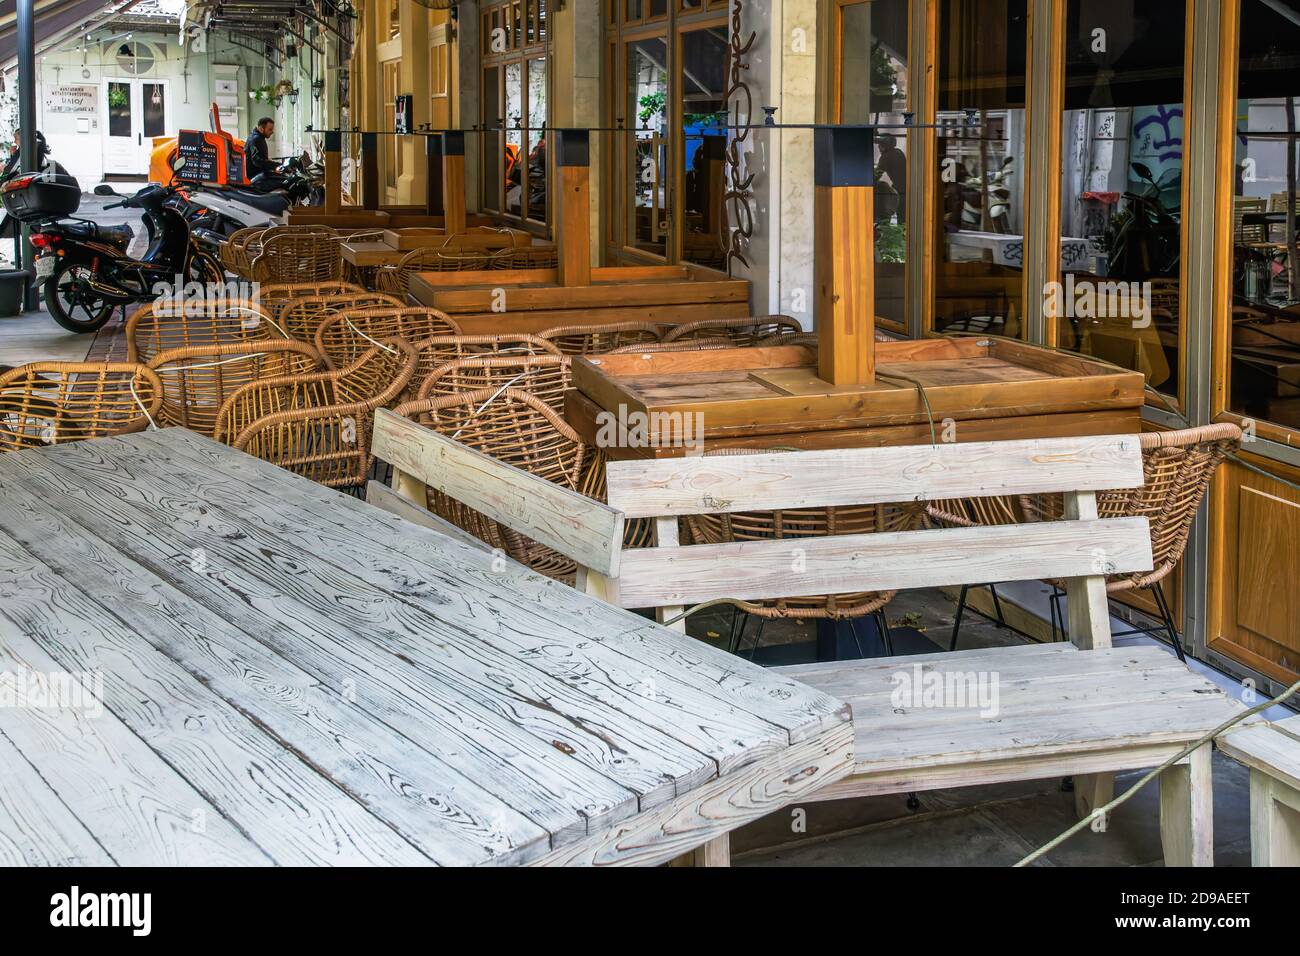 Salonicco, Grecia - Novembre 02 2020: Tavoli vuoti all'aperto, come le misure Coronavirus influiscono sul business e sulla vita. Ristorante chiuso sedie nel centro della città, dopo che il governo cerca di impedire COVID-19. Foto Stock